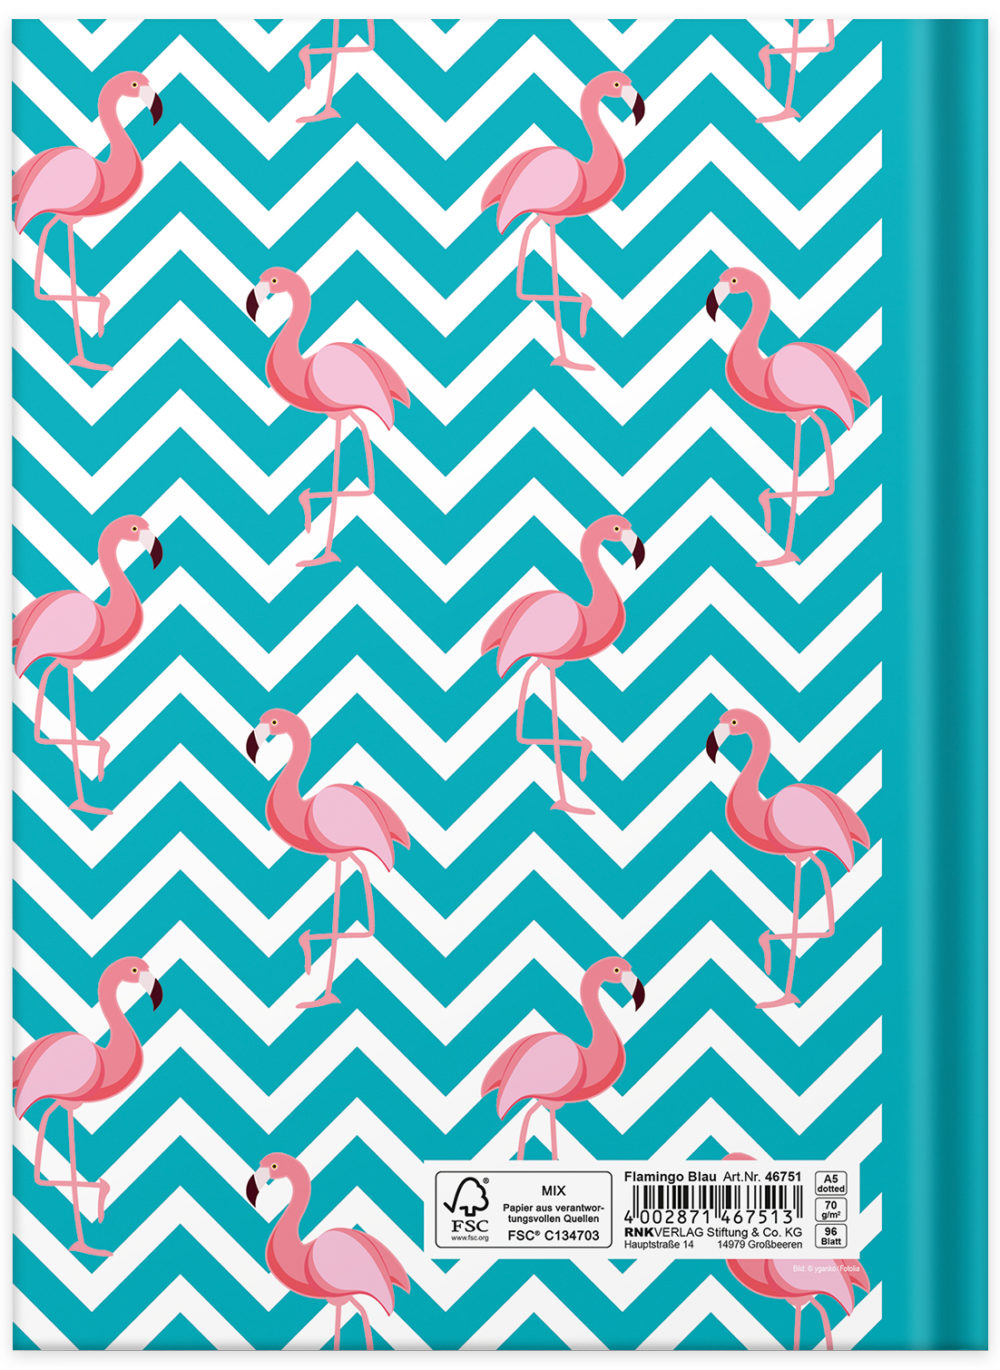 Notizbuch "Flamingo blau" Rückseite mit Flamingos und Muster